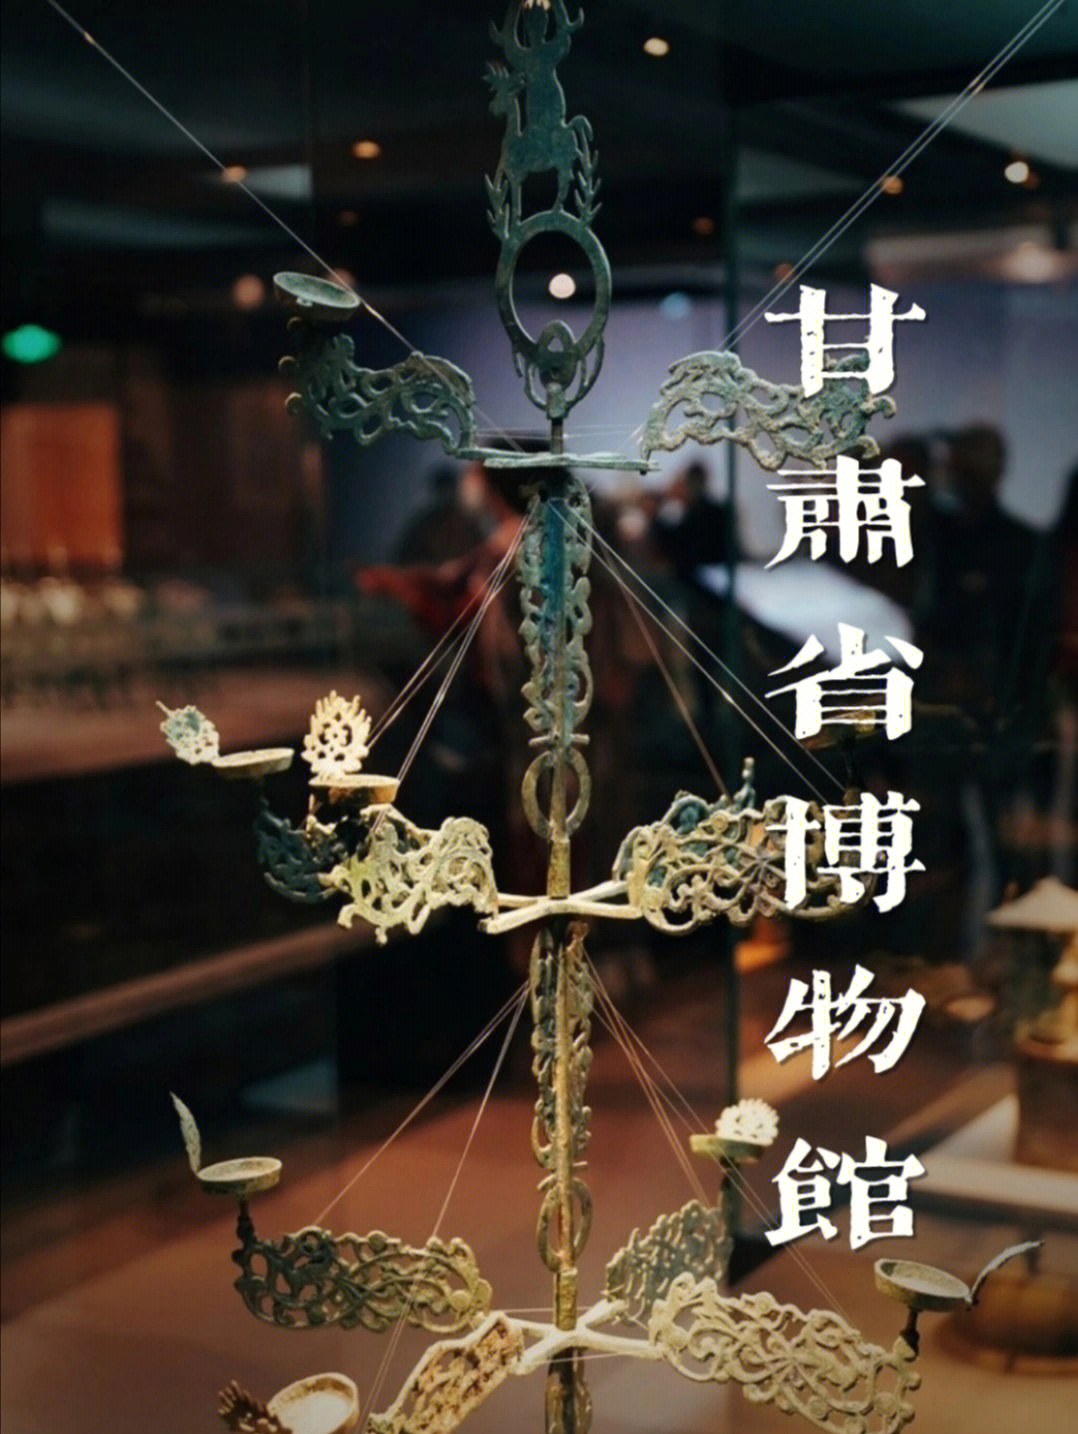 甘肃是丝绸之路的必经之地,甘肃省博物馆馆藏文物35万件,从白垩纪的古